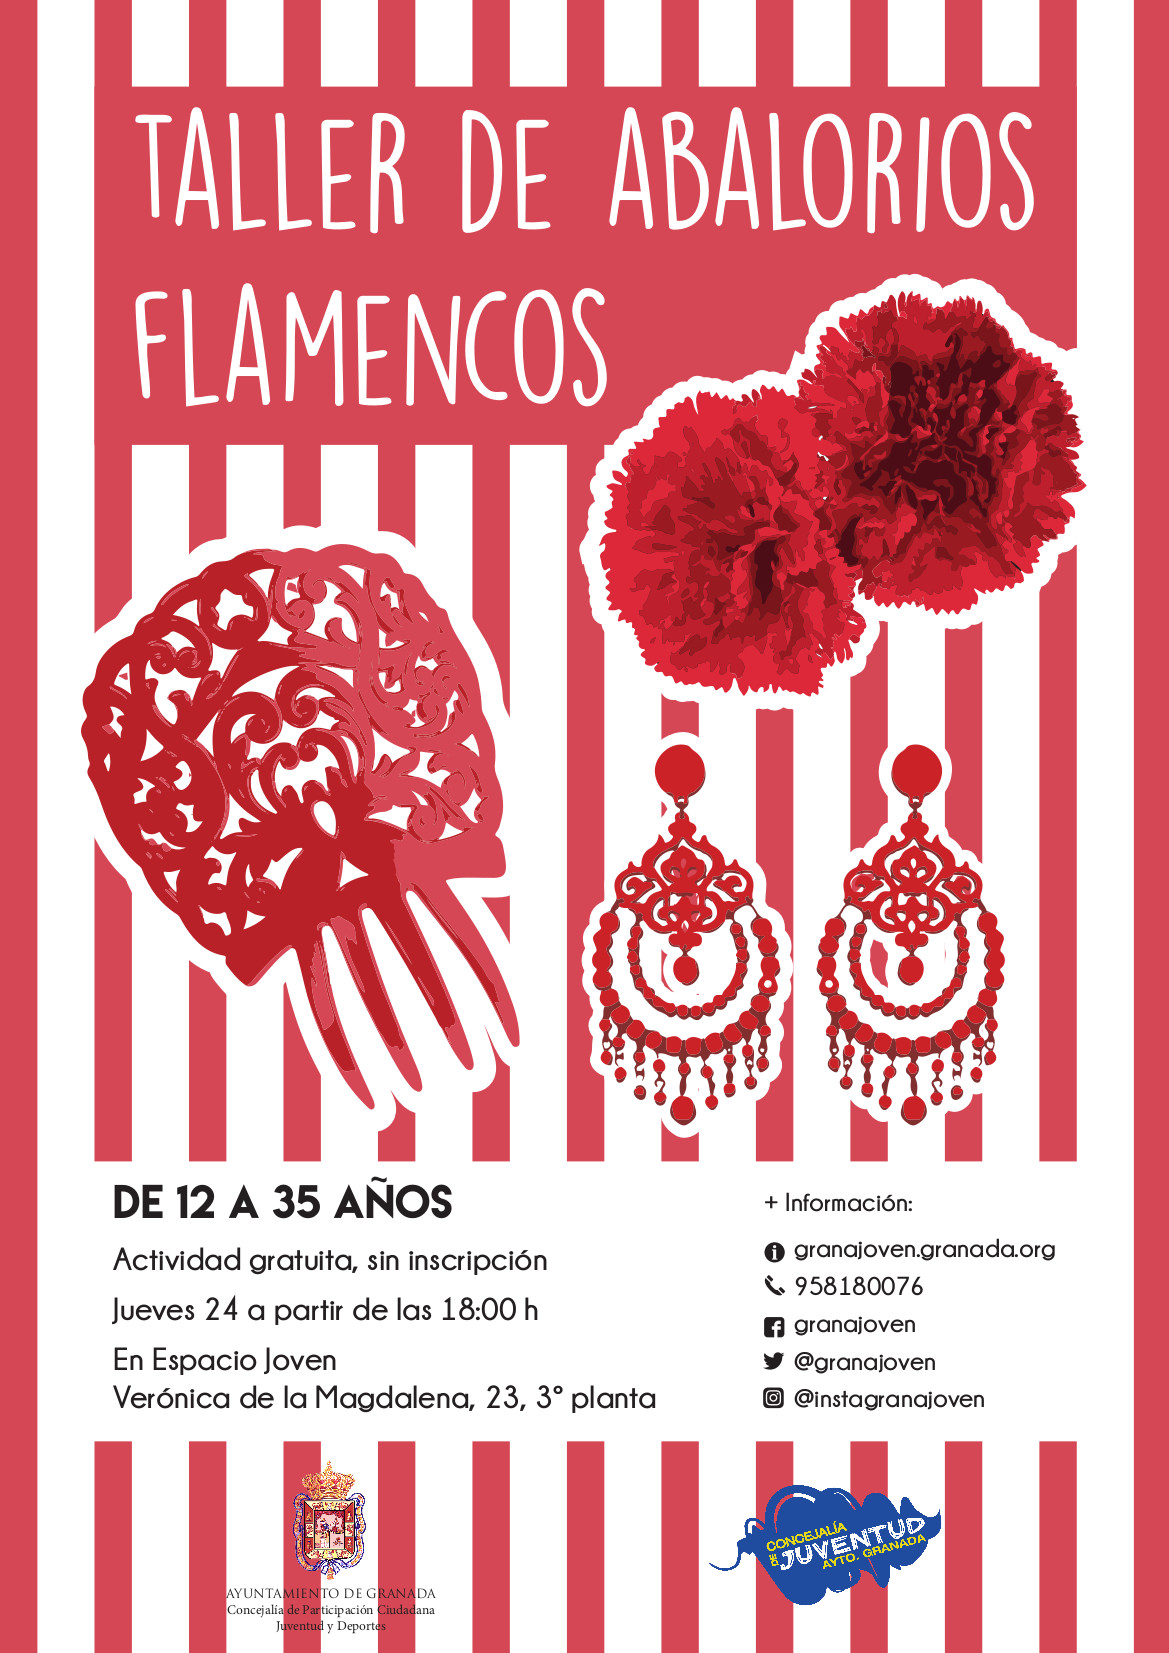 Taller de Abalorios flamencos